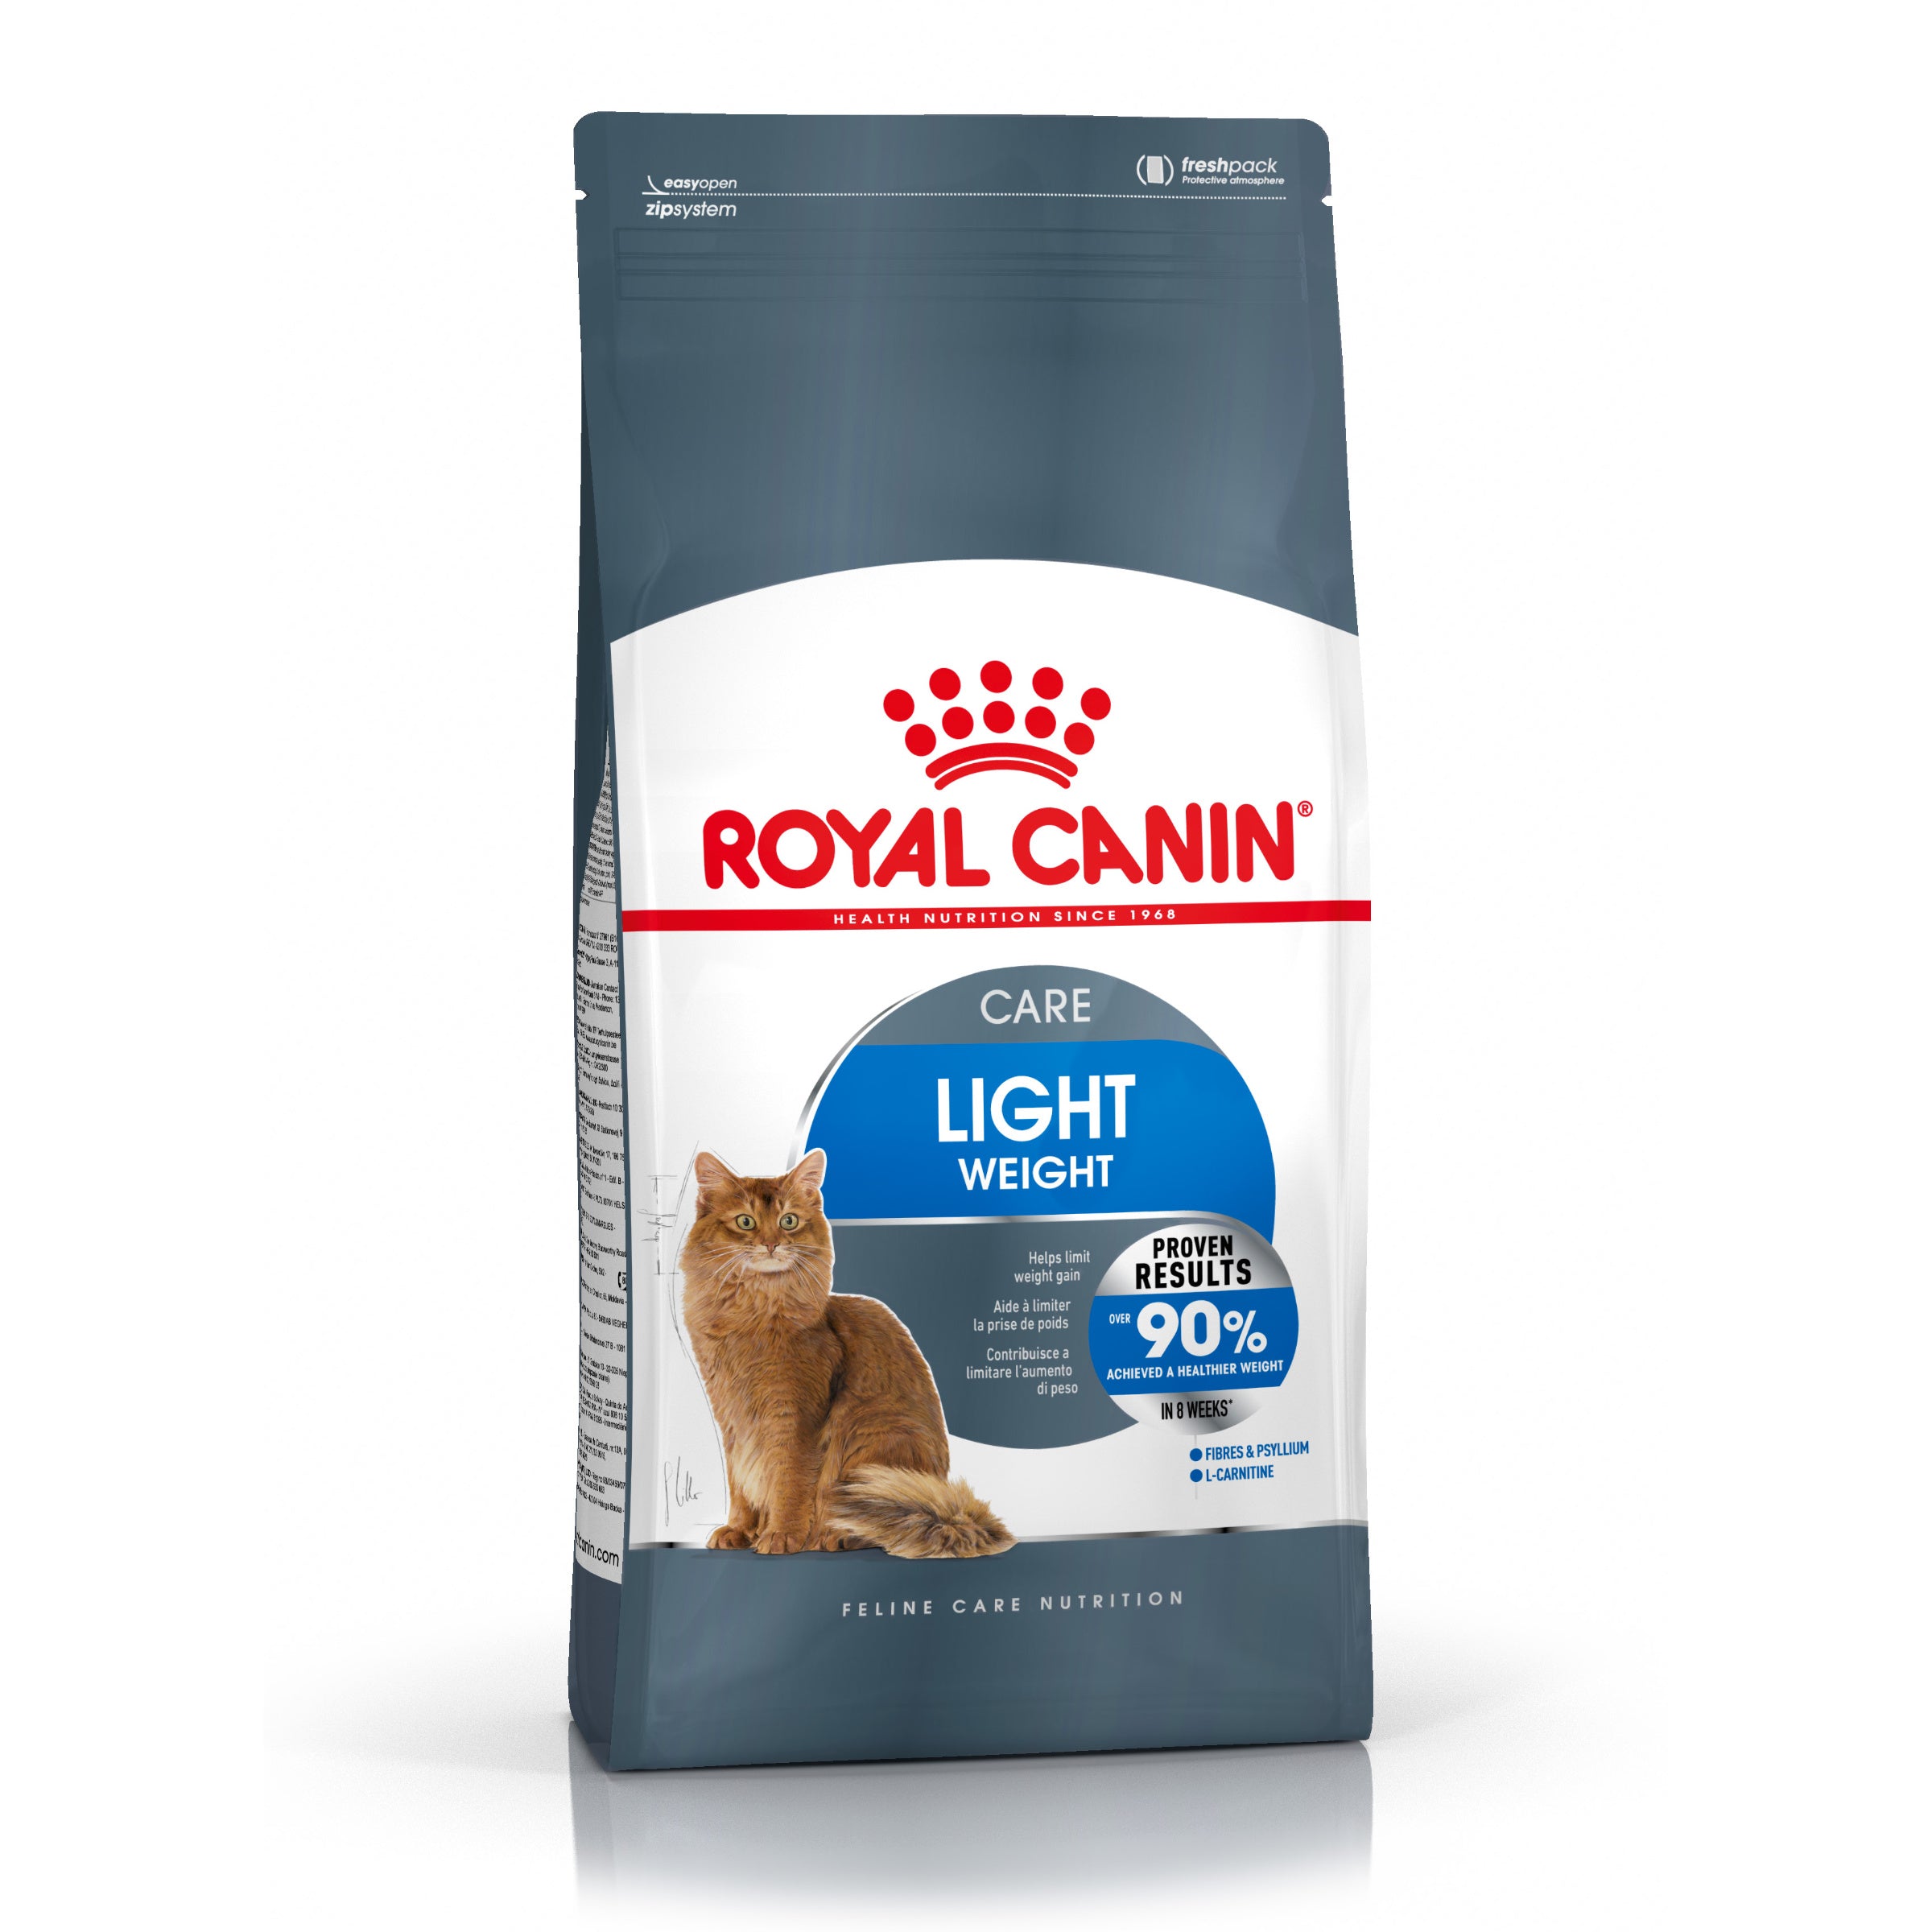 Billede af Royal canin - Royal Canin Light Weight Care Adult Tørfoder til kat 400g